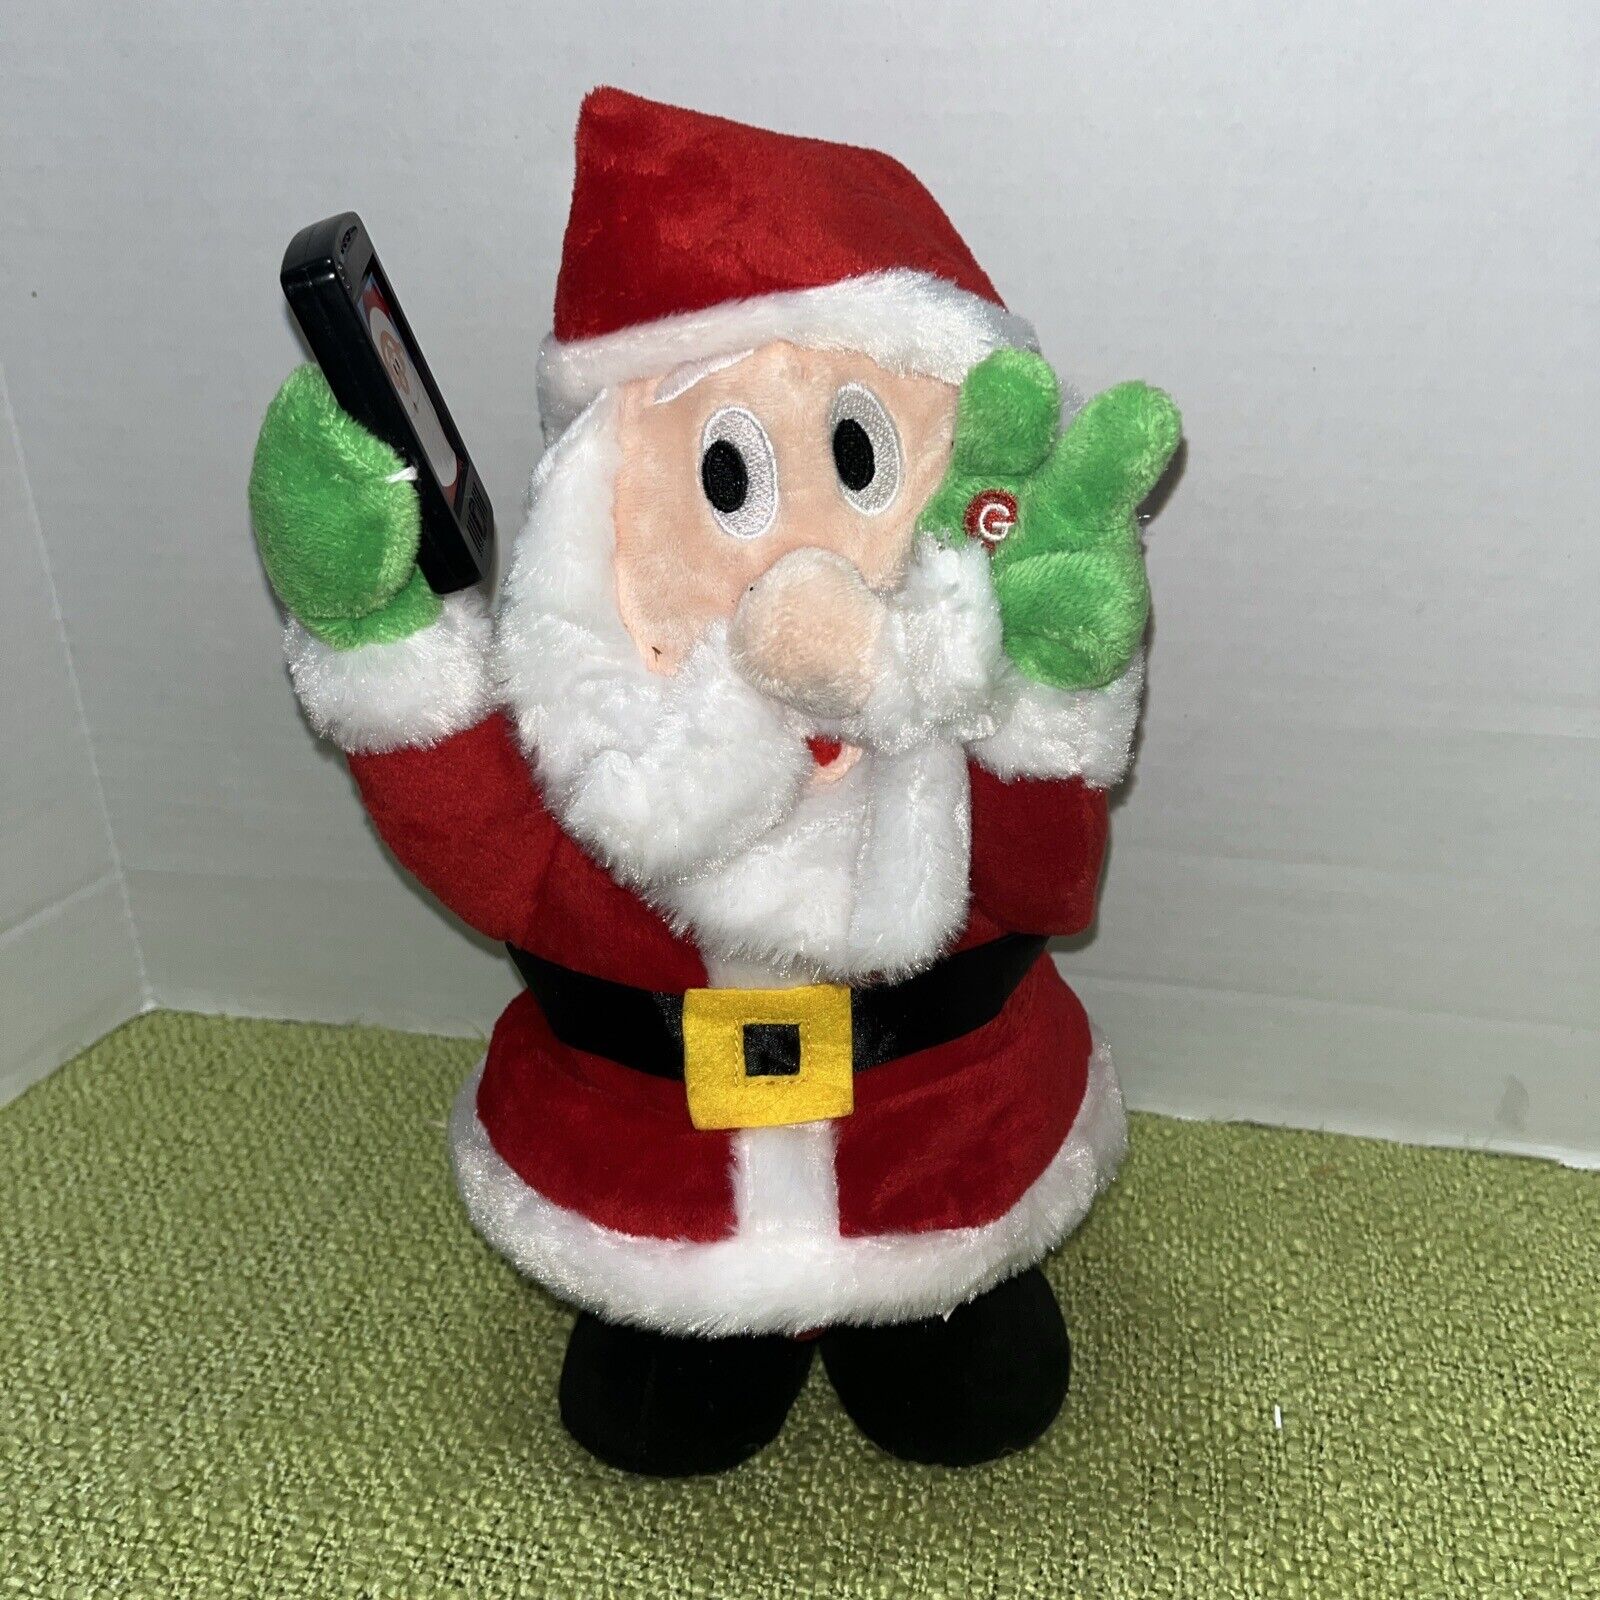 2016 Gemmy Santa Claus Musical Plush Phone Flashes Dances Let Me Take A Selfie